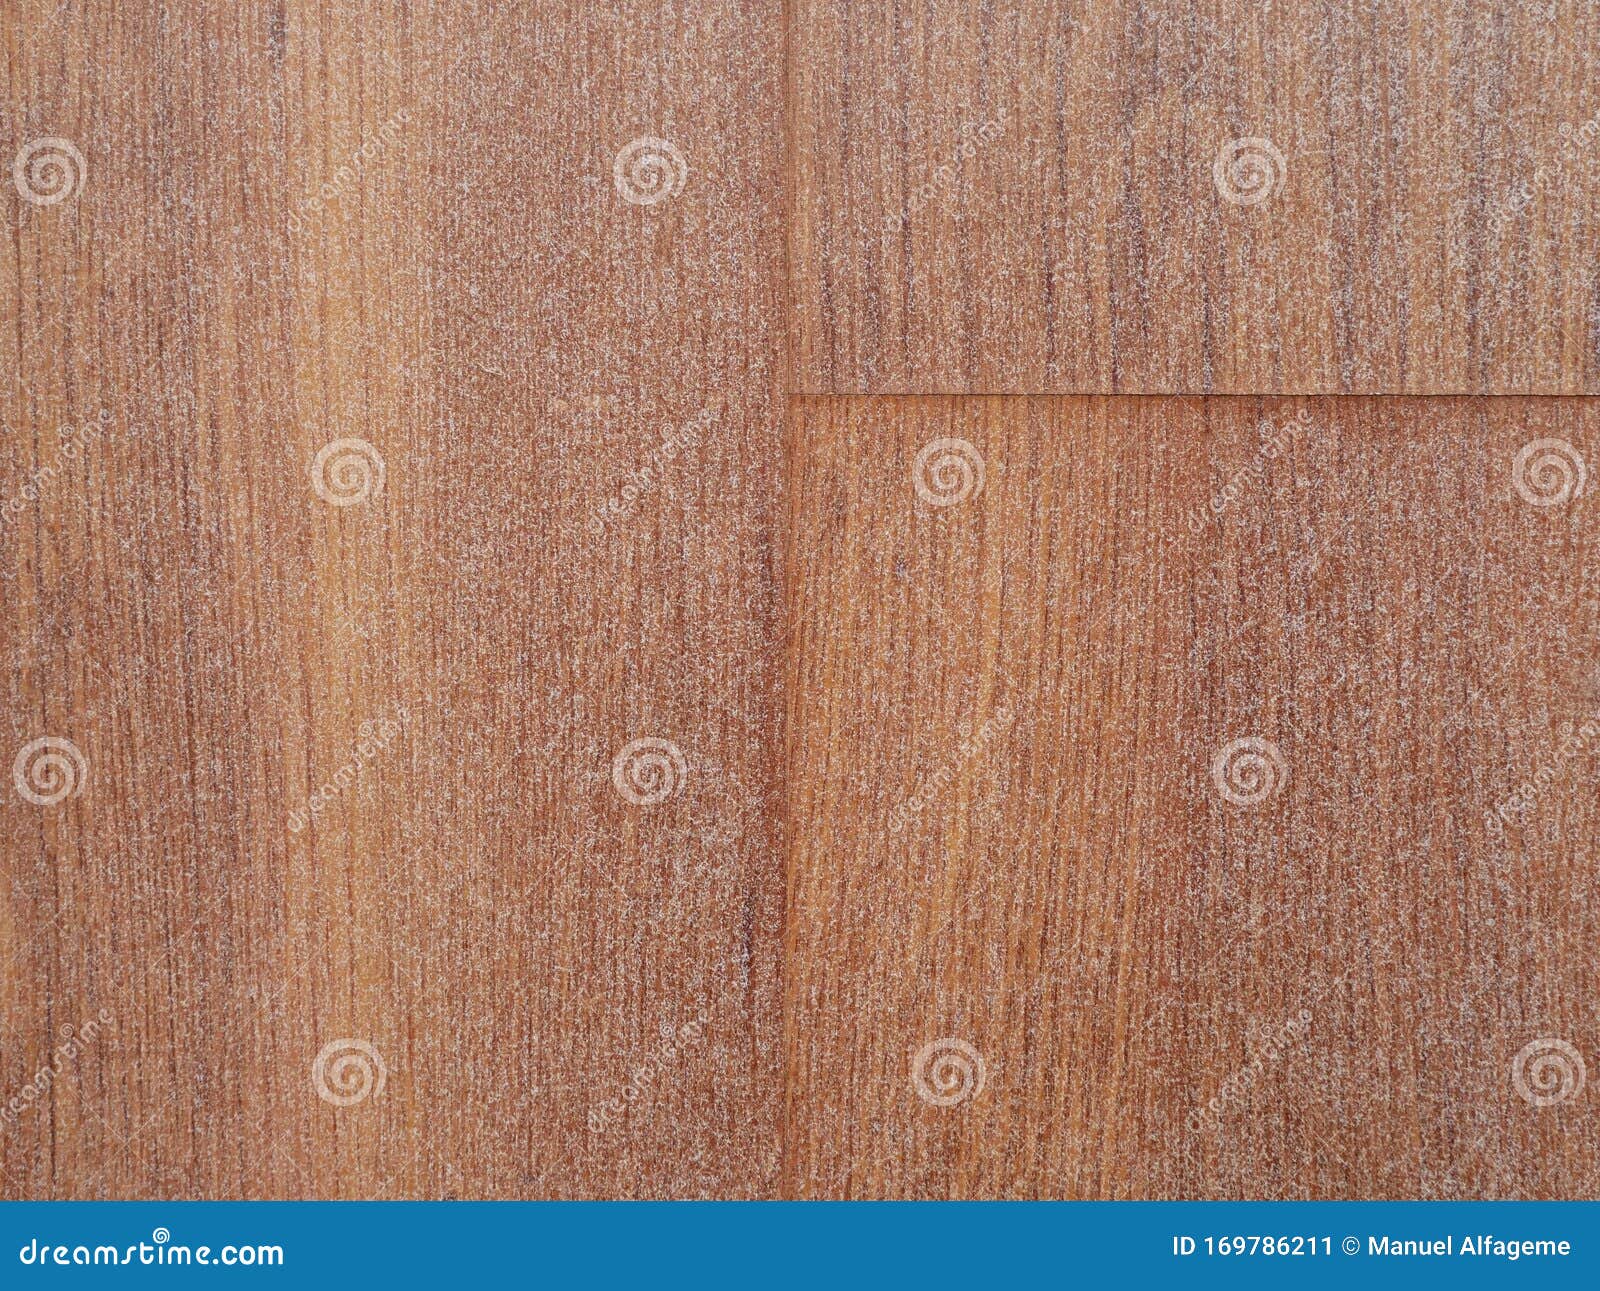 不同色调的木质壁纸库存图片 图片包括有线路 自然 纺织品 葡萄酒 材料 木头 设计